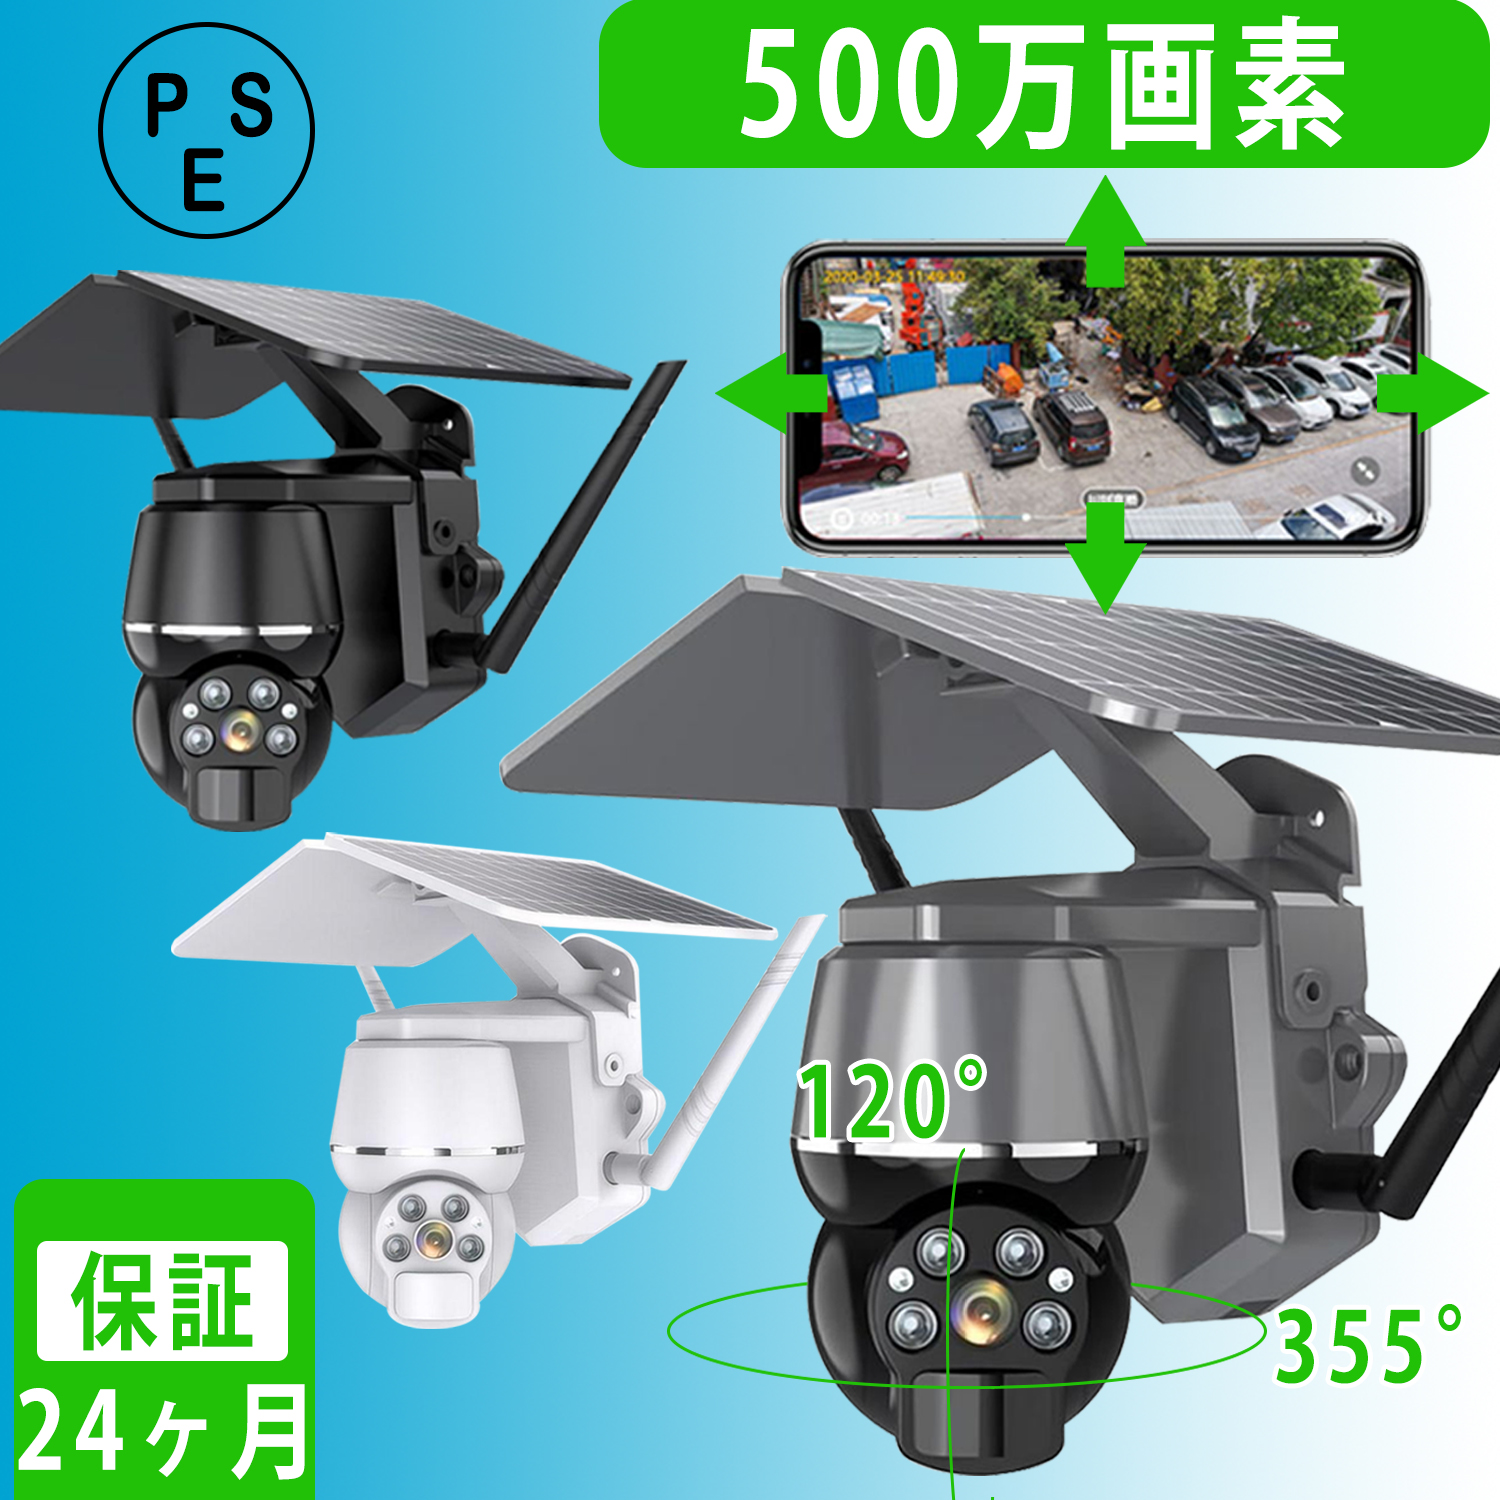 防犯カメラ屋外家庭用wifi 500万画素ソーラーセットワ| JChere日本